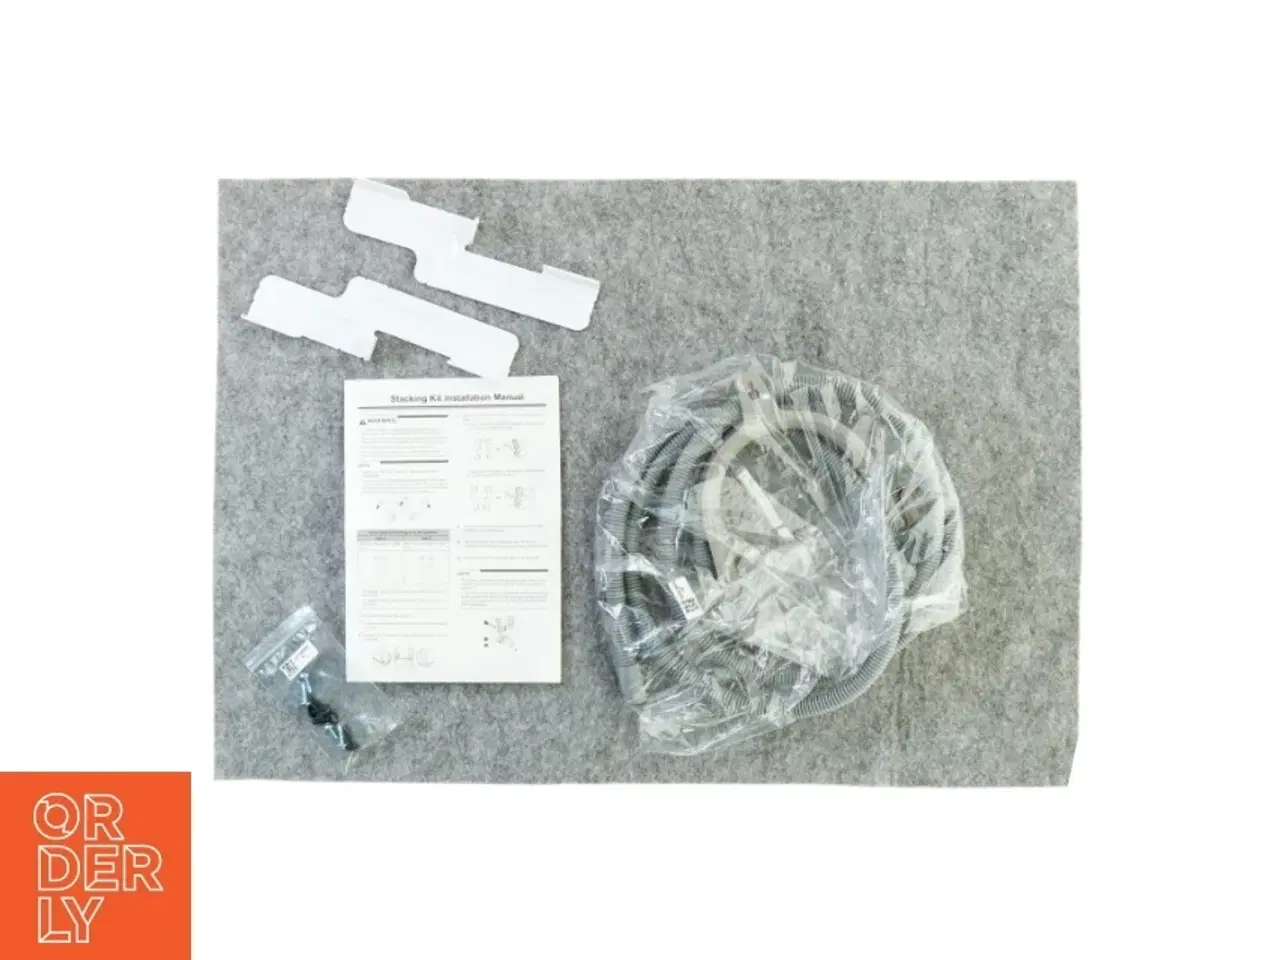 Billede 2 - Stacking kit og slanger til LG vaskesøjle I ORIGINAL EMBALLAGE (str. 24 x 22 cm)